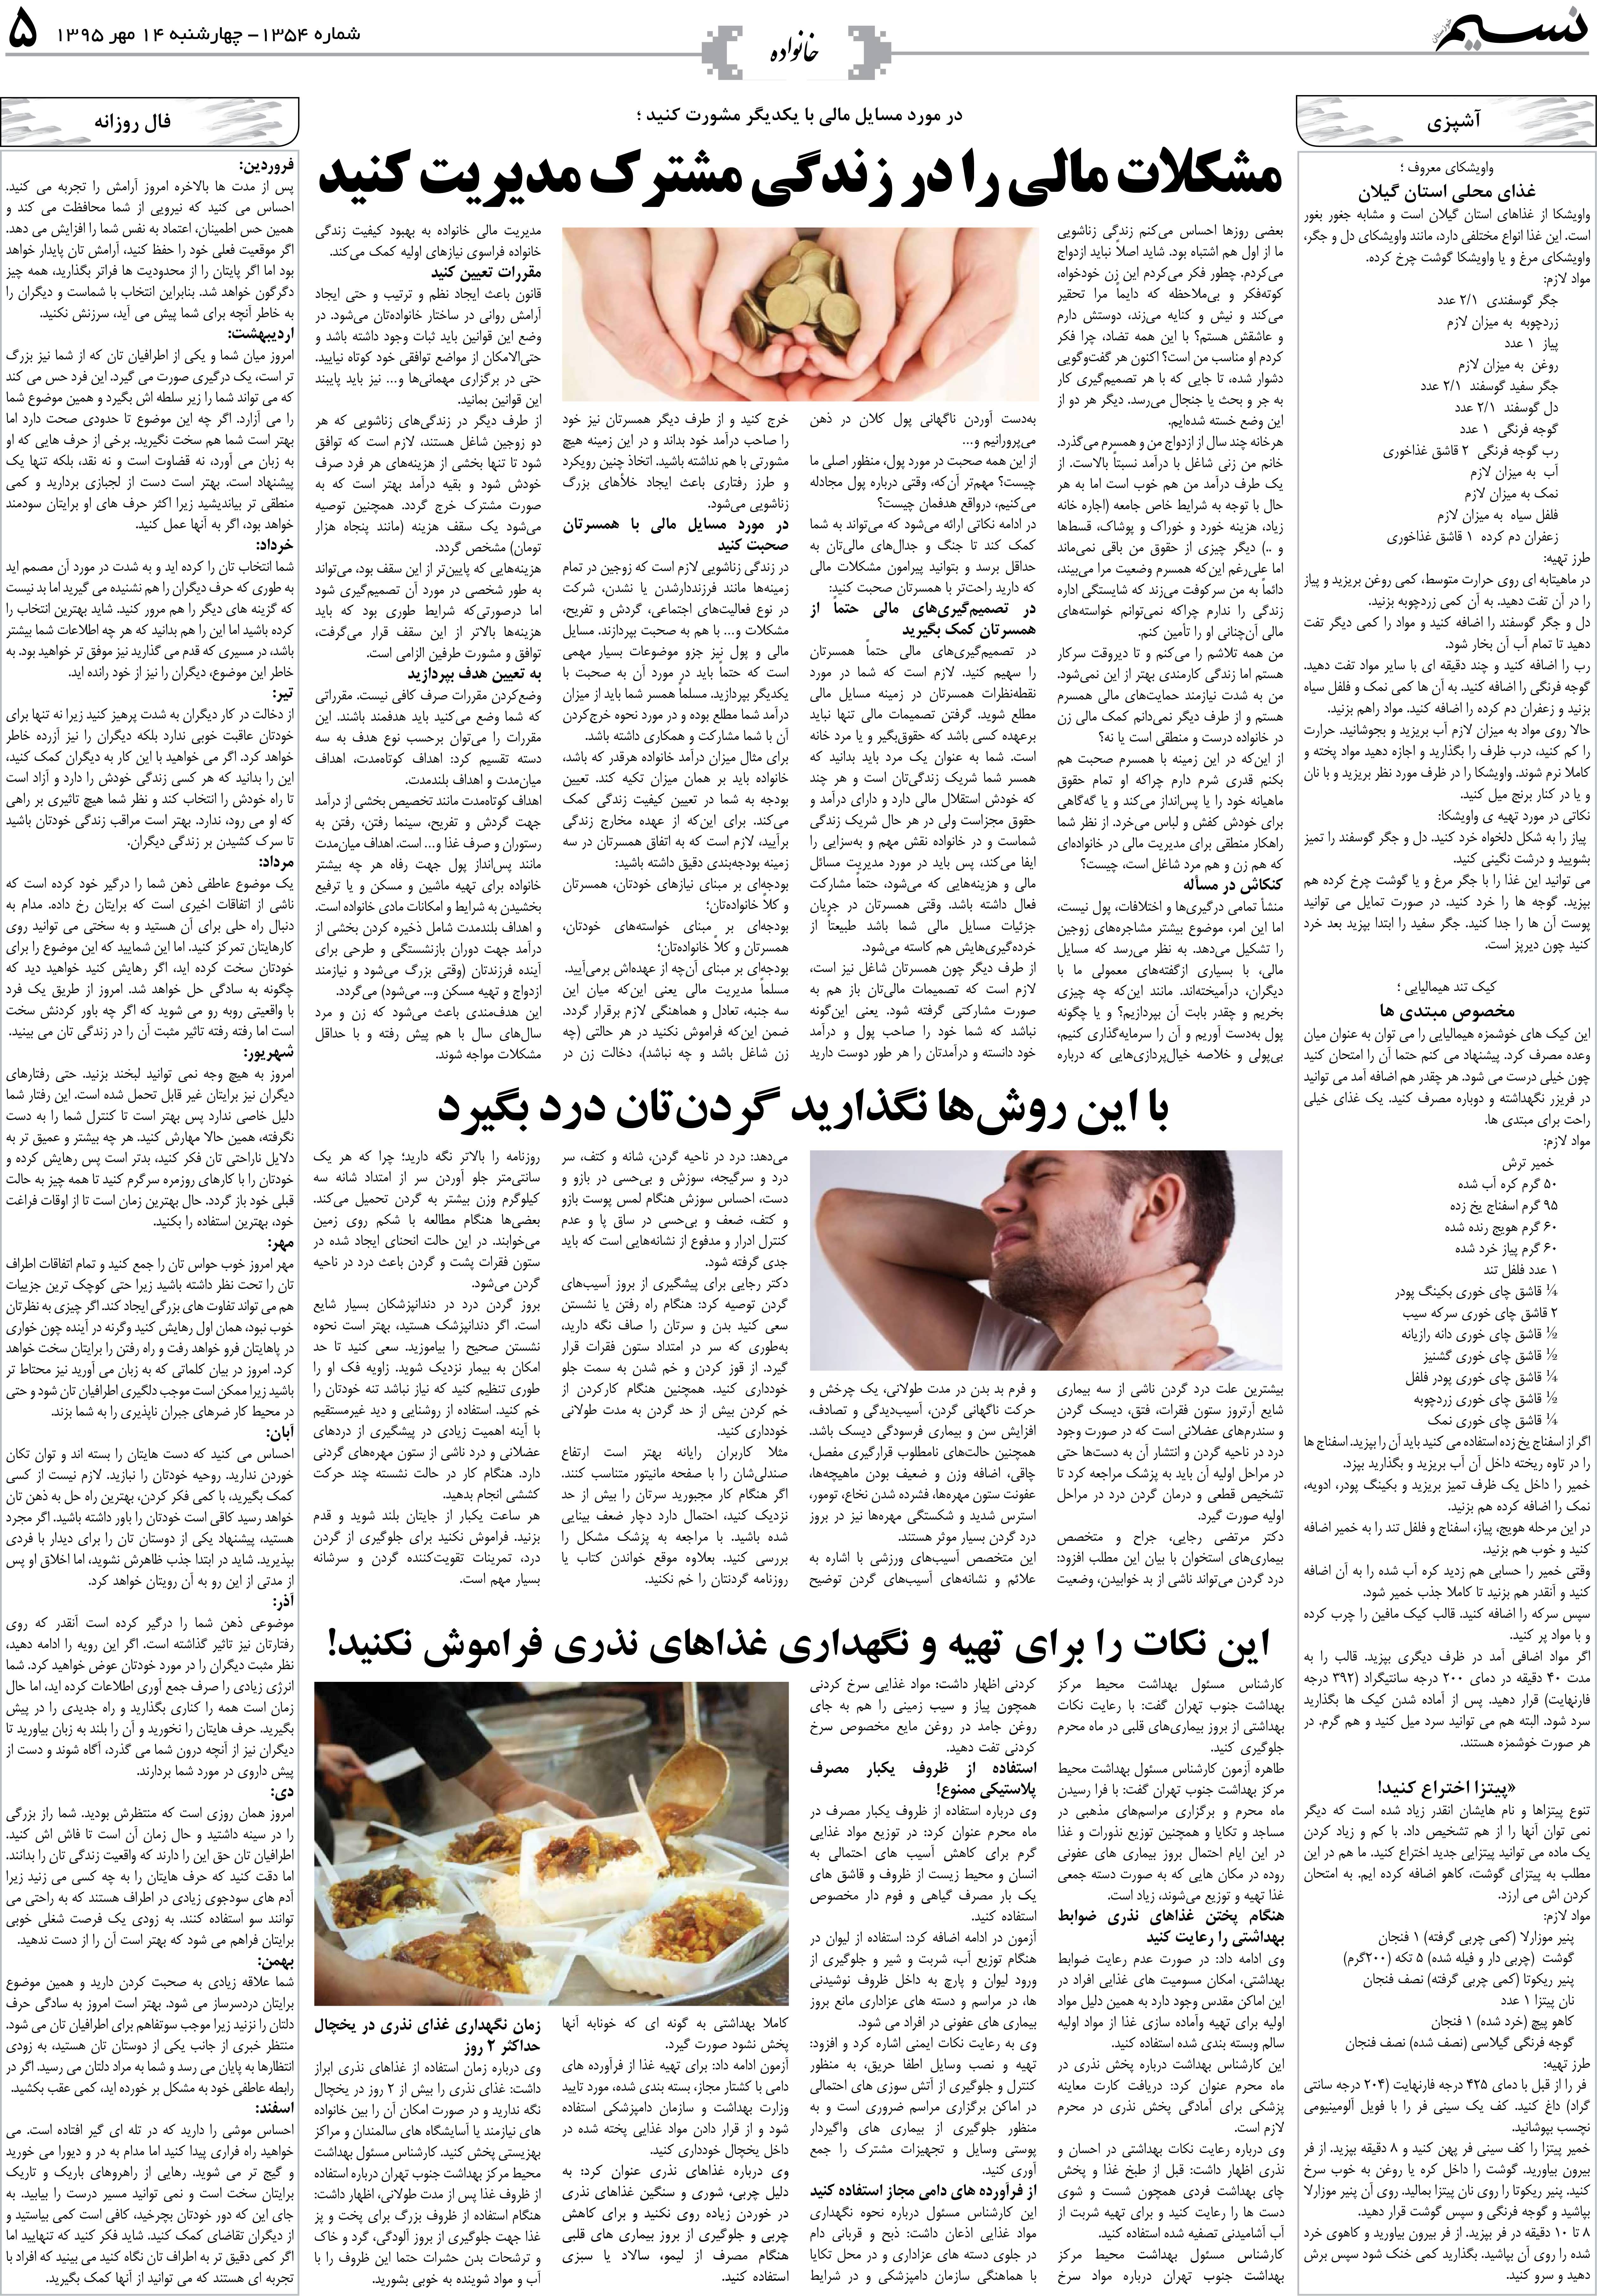 صفحه خانواده روزنامه نسیم شماره 1354